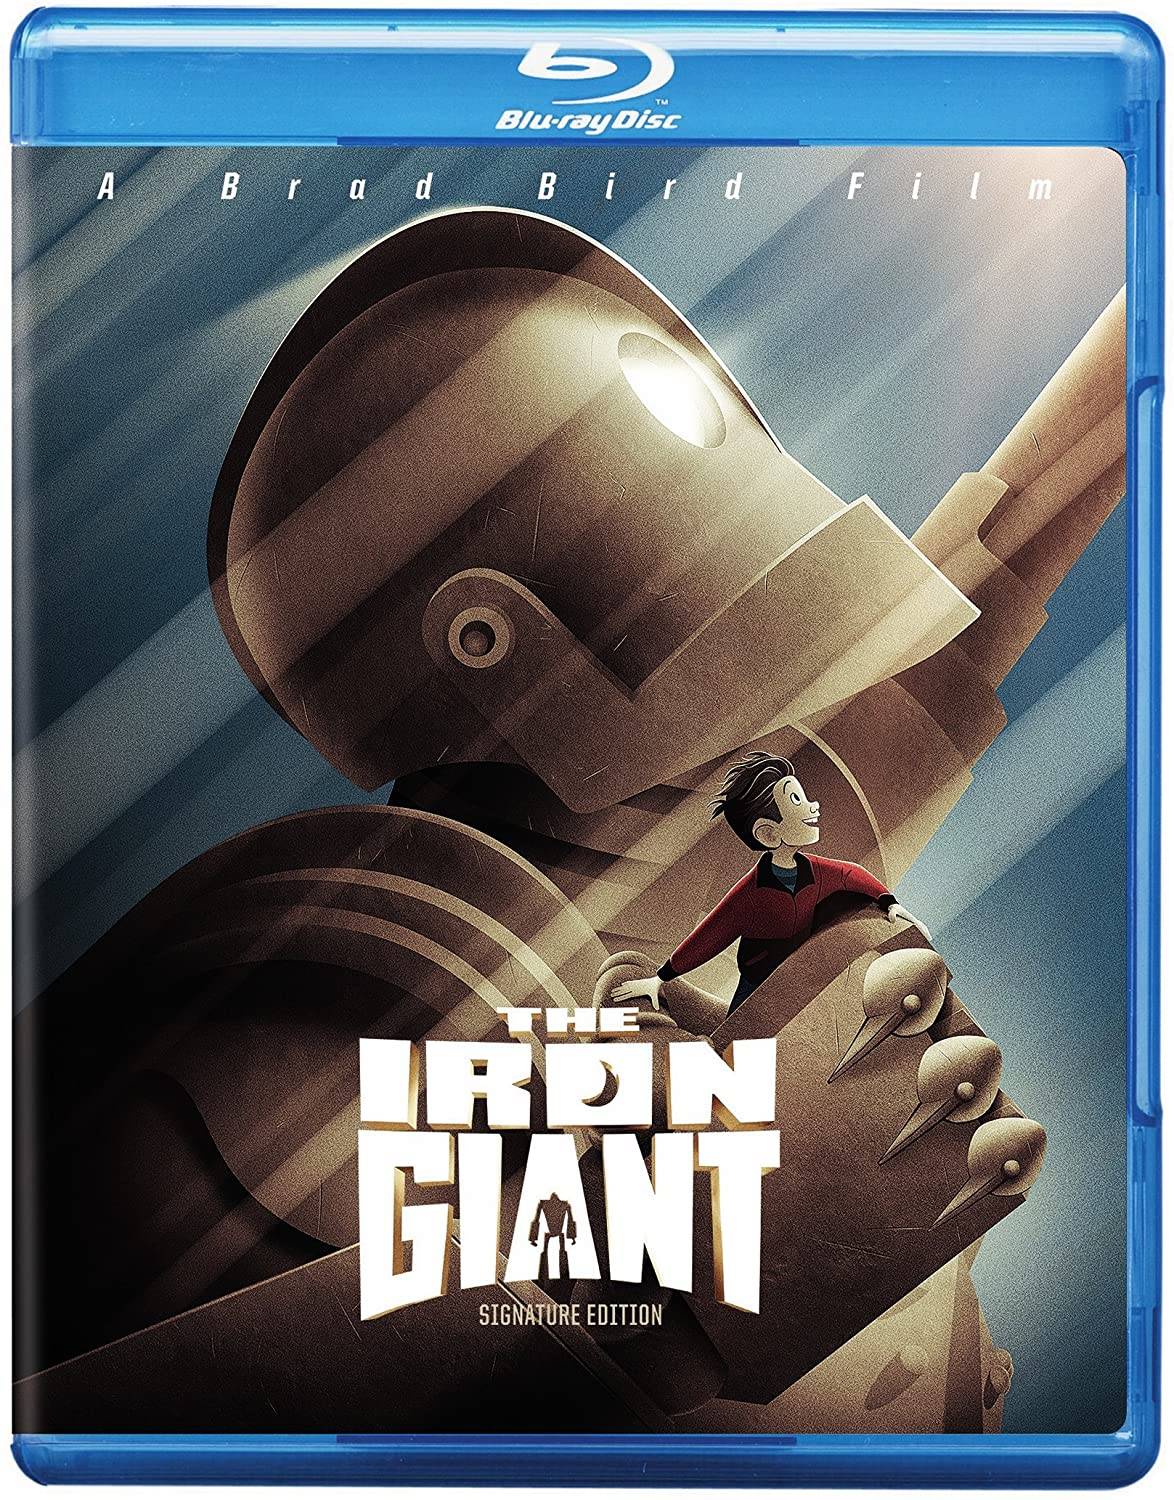 The iron giant 1080p